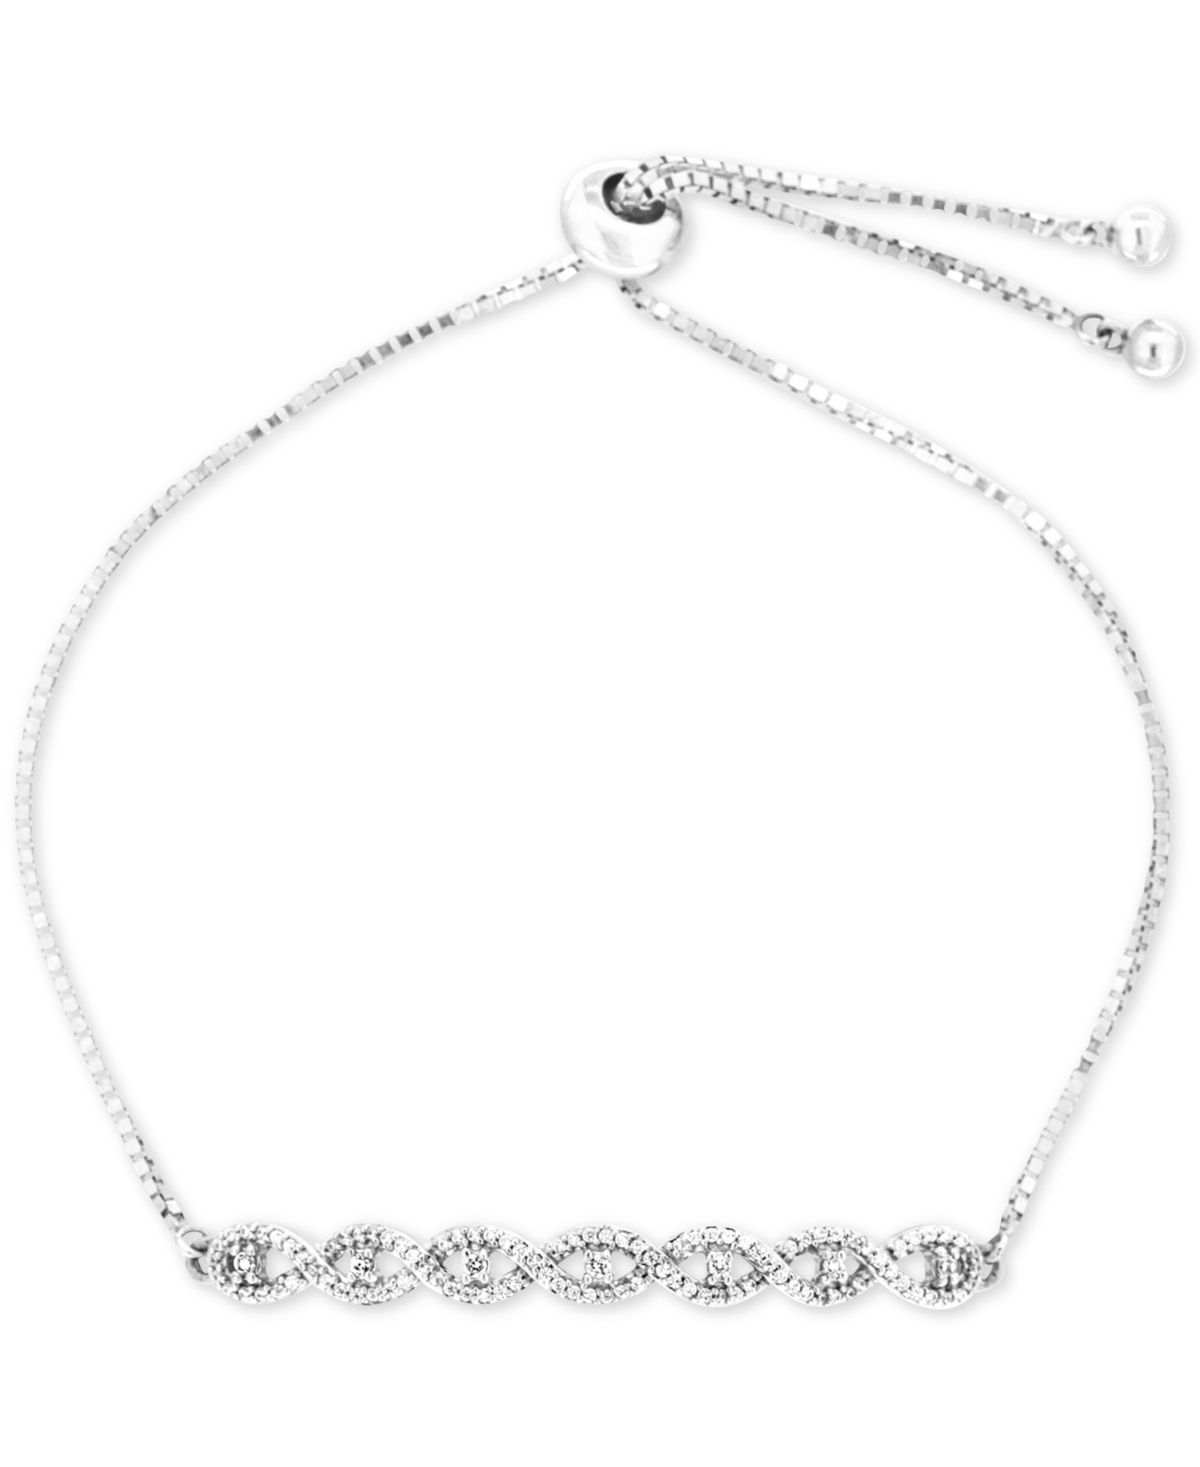 Diamond Twist Bolo Bracelet (1/4 ct. t.w.) in Sterling Silver, Created for Macy's - Silver